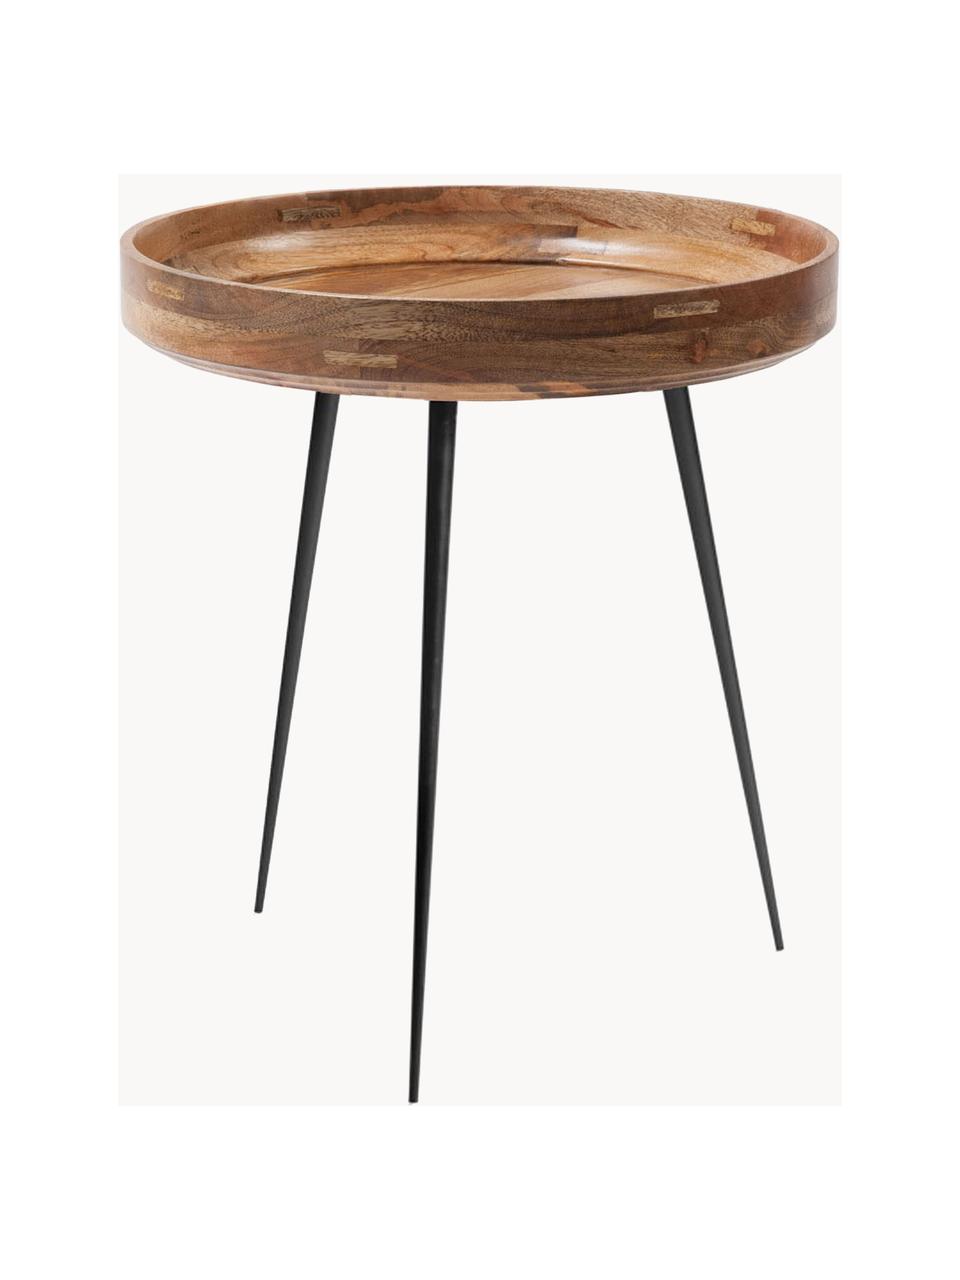 Stolik pomocniczy z drewna mangowego Bowl Table, Blat: drewno mangowe lakierowan, Nogi: stal malowana proszkowo, Drewno mangowe lakierowane, Ø 46 x 52 cm